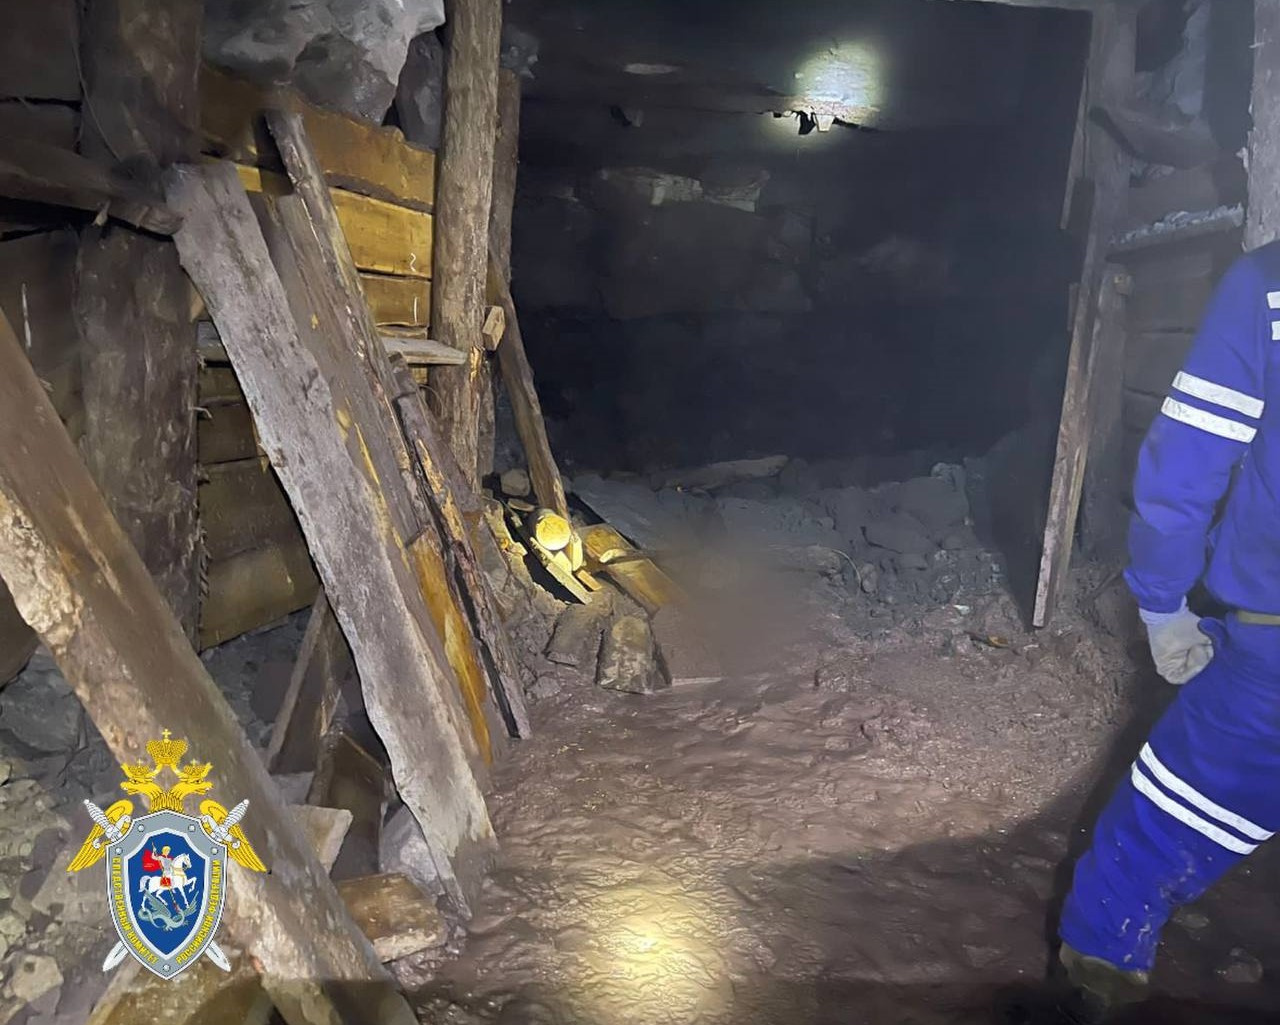 Фото шахты, где погиб человек, показали забайкальские следователи